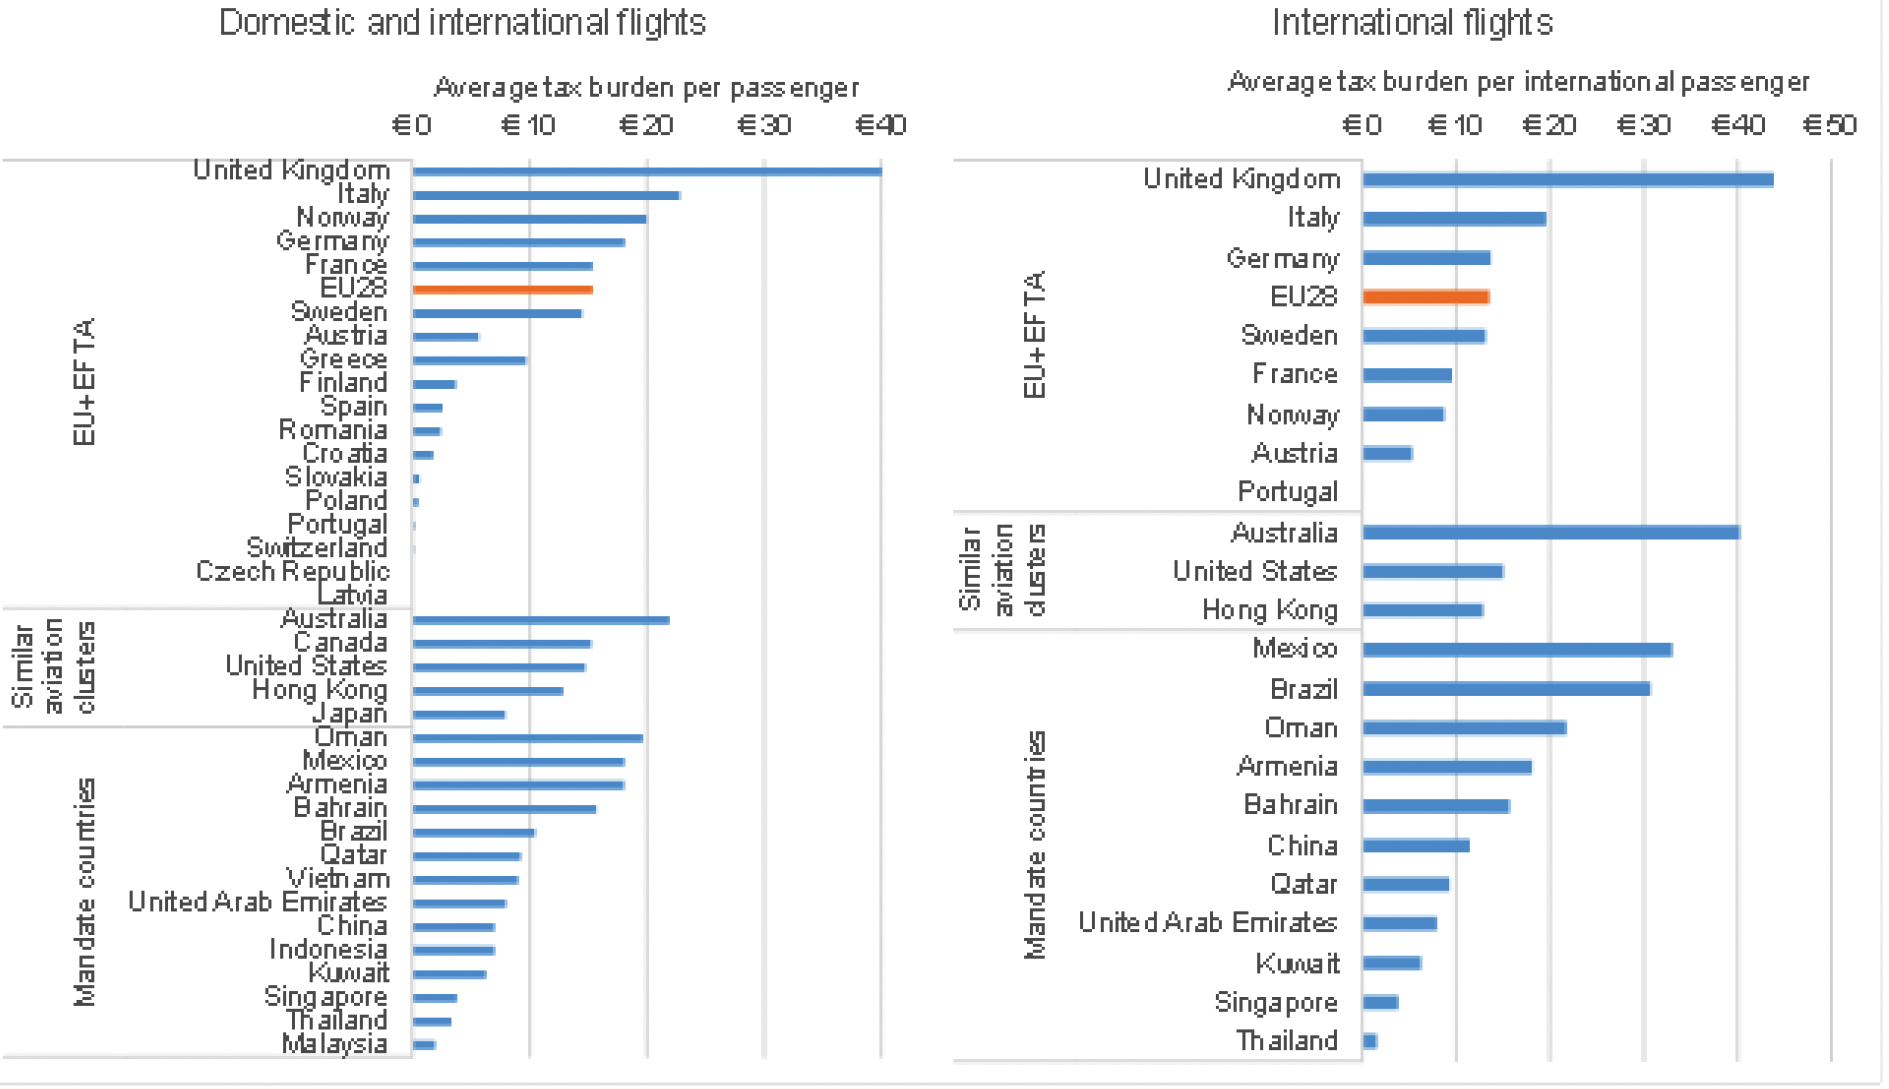 Figuur 1. Gemiddelde belastingdruk per vliegtuigpassagier